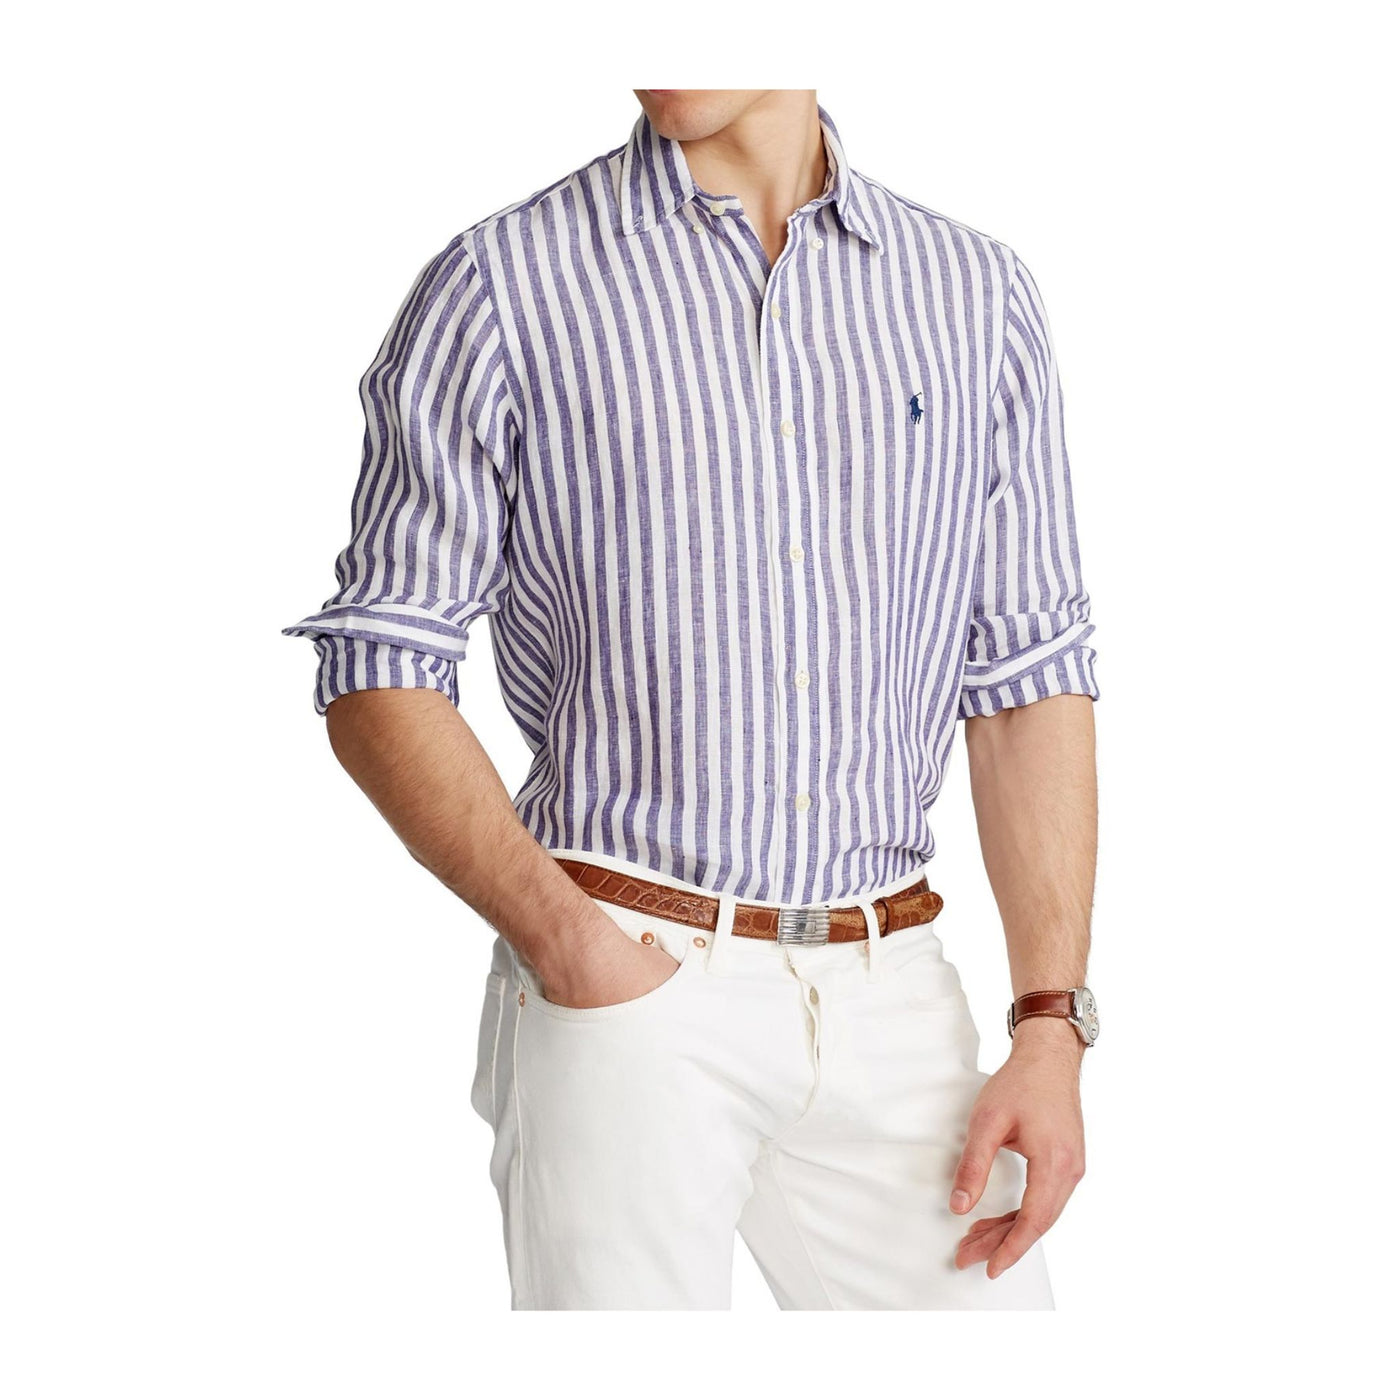 Camicia Uomo con righe verticali realizzata in morbido lino